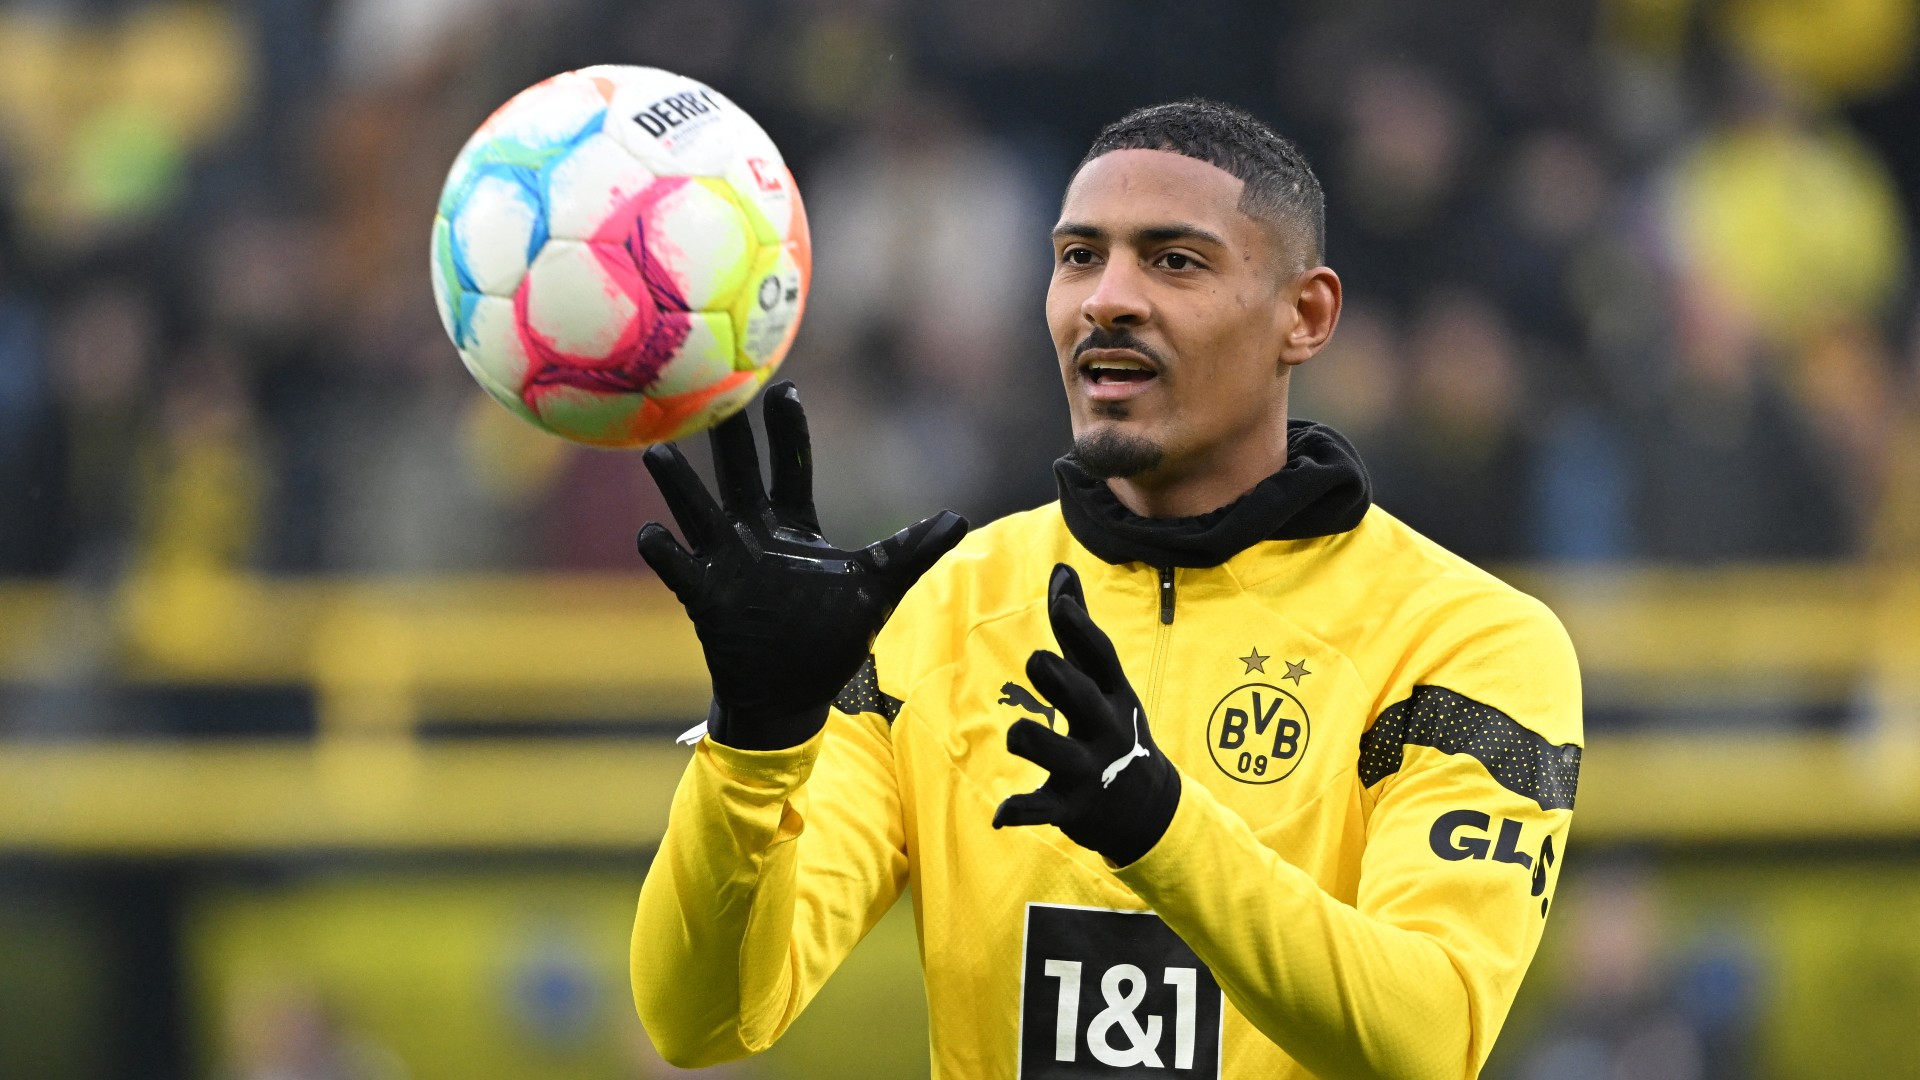 Atacante do Borussia Dortmund está de volta ao futebol após tratamento contra o câncer